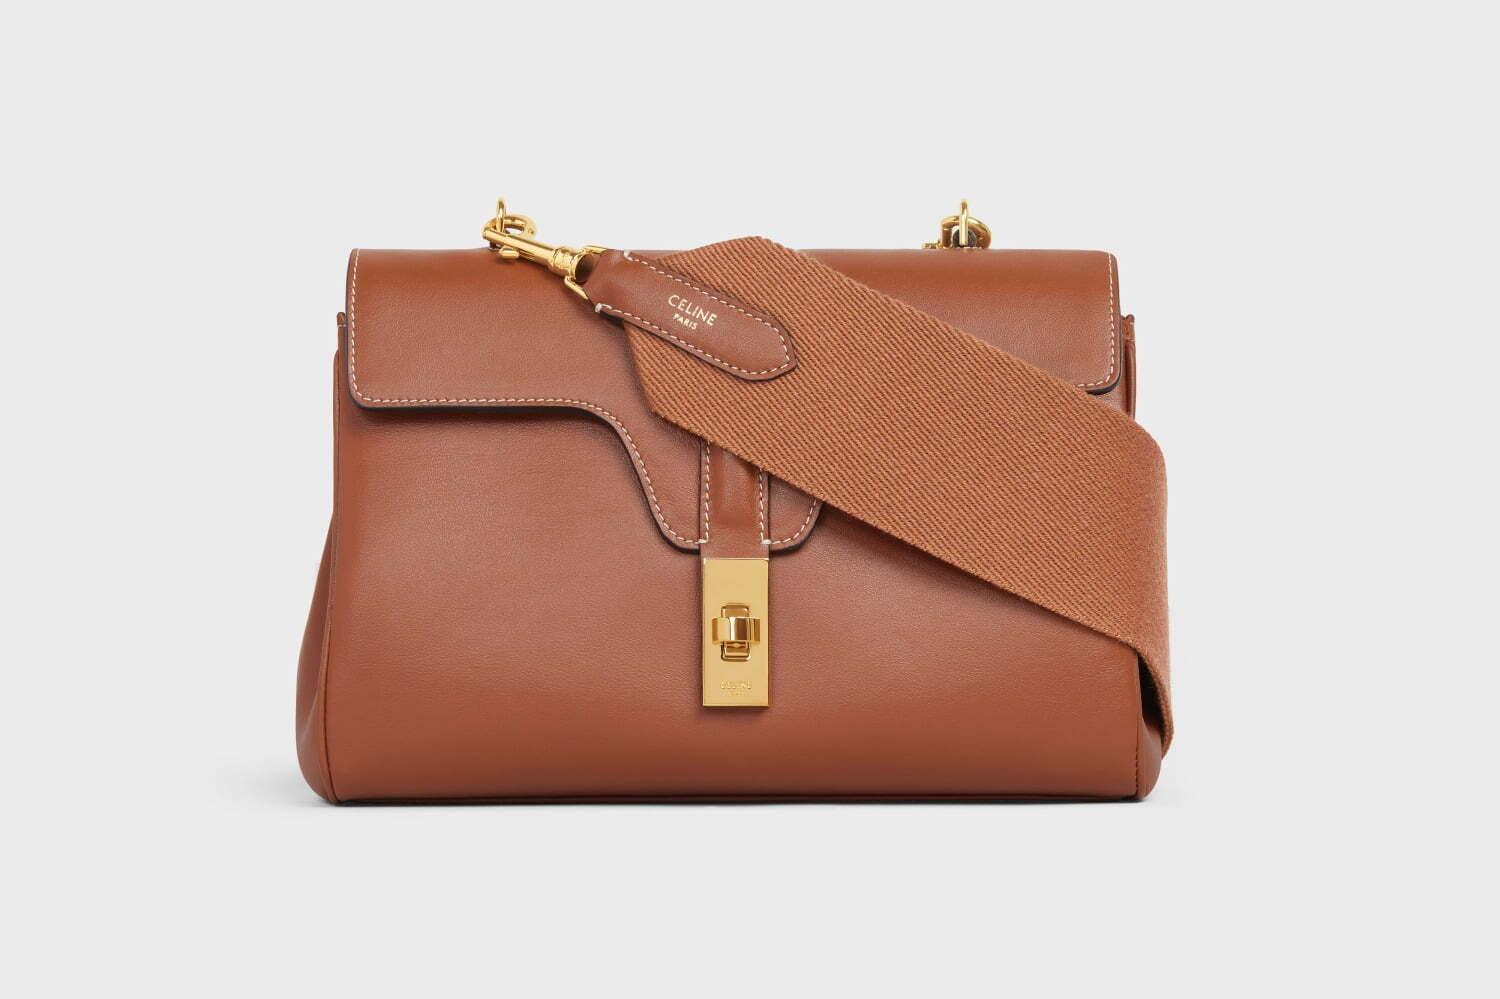 セリーヌの新作バッグ「16 ソフト ティーン」柔らかなレザーを採用、日常使いしやすいサイズ感に 